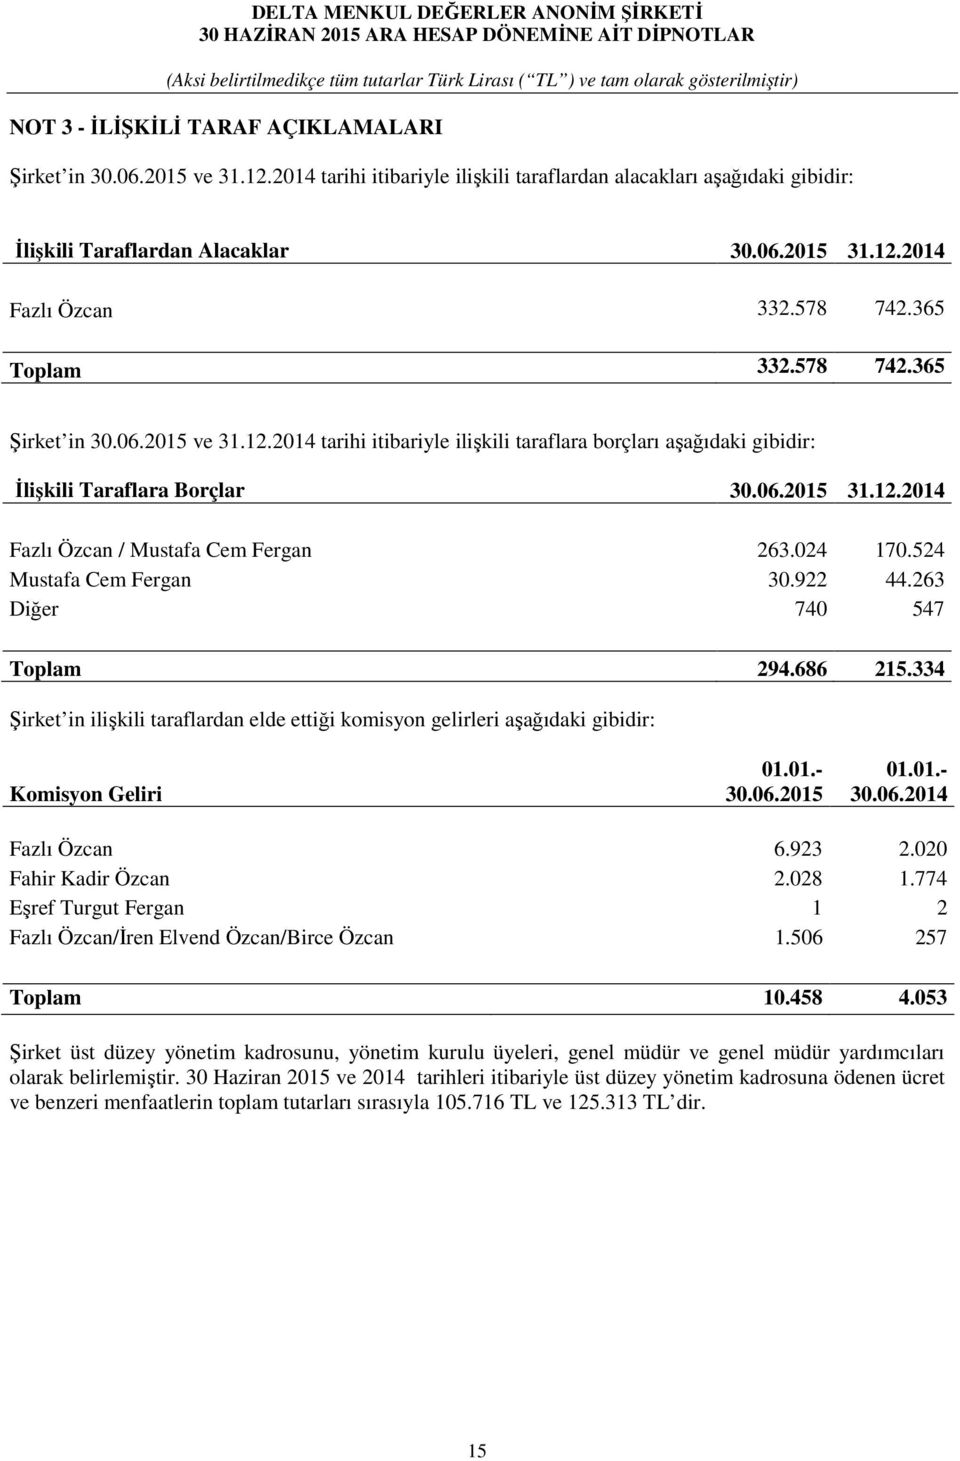 024 170.524 Mustafa Cem Fergan 30.922 44.263 Diğer 740 547 Toplam 294.686 215.334 Şirket in ilişkili taraflardan elde ettiği komisyon gelirleri aşağıdaki gibidir: Komisyon Geliri 01.01.- 30.06.